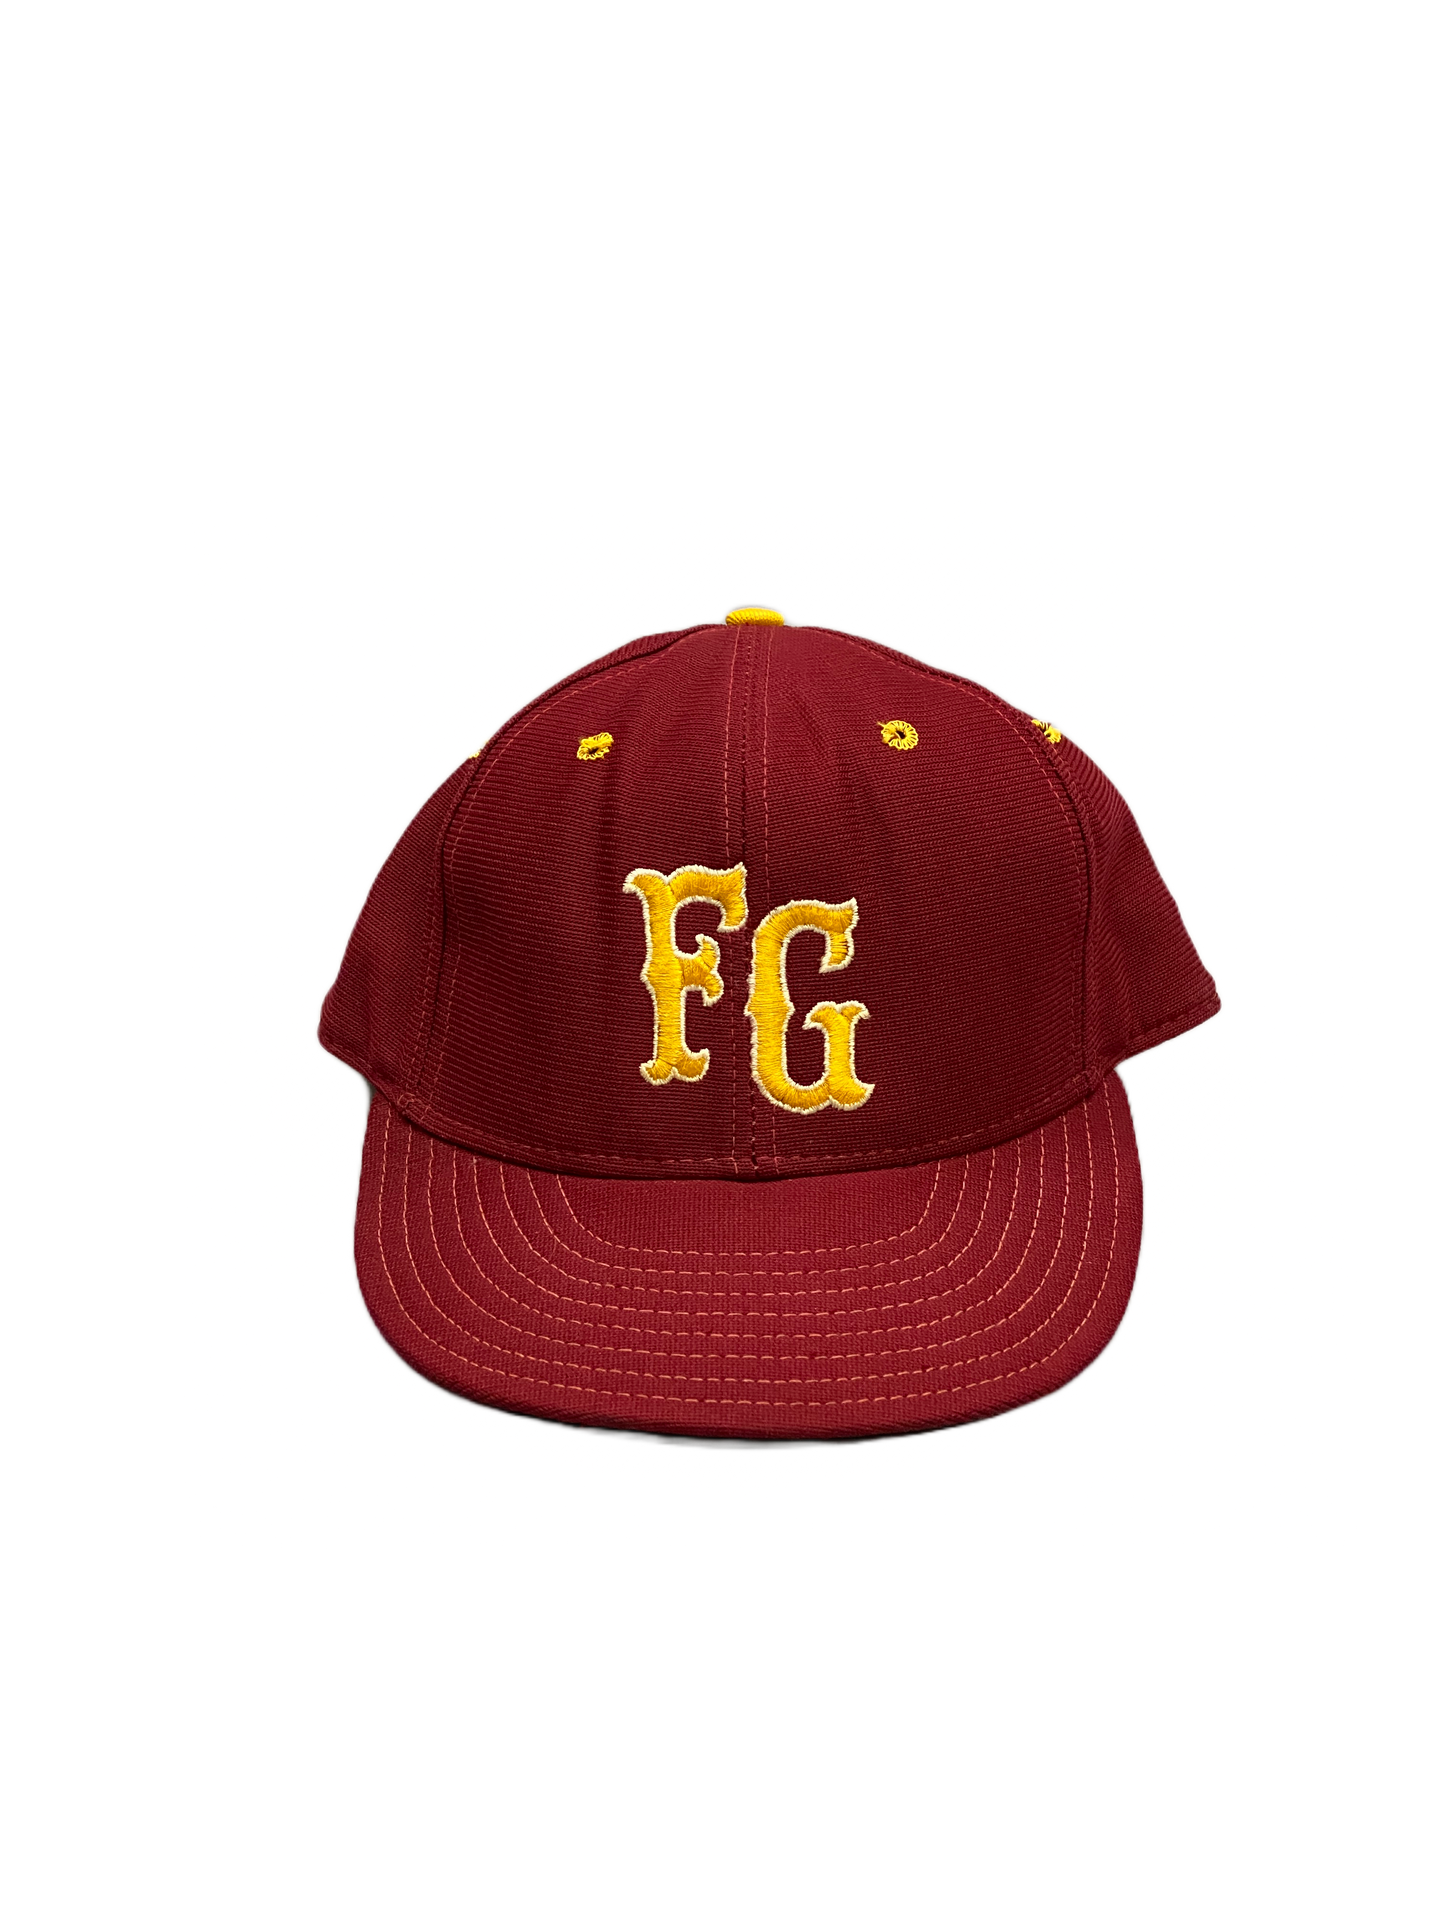 New Era FG Vintage 70's Cap